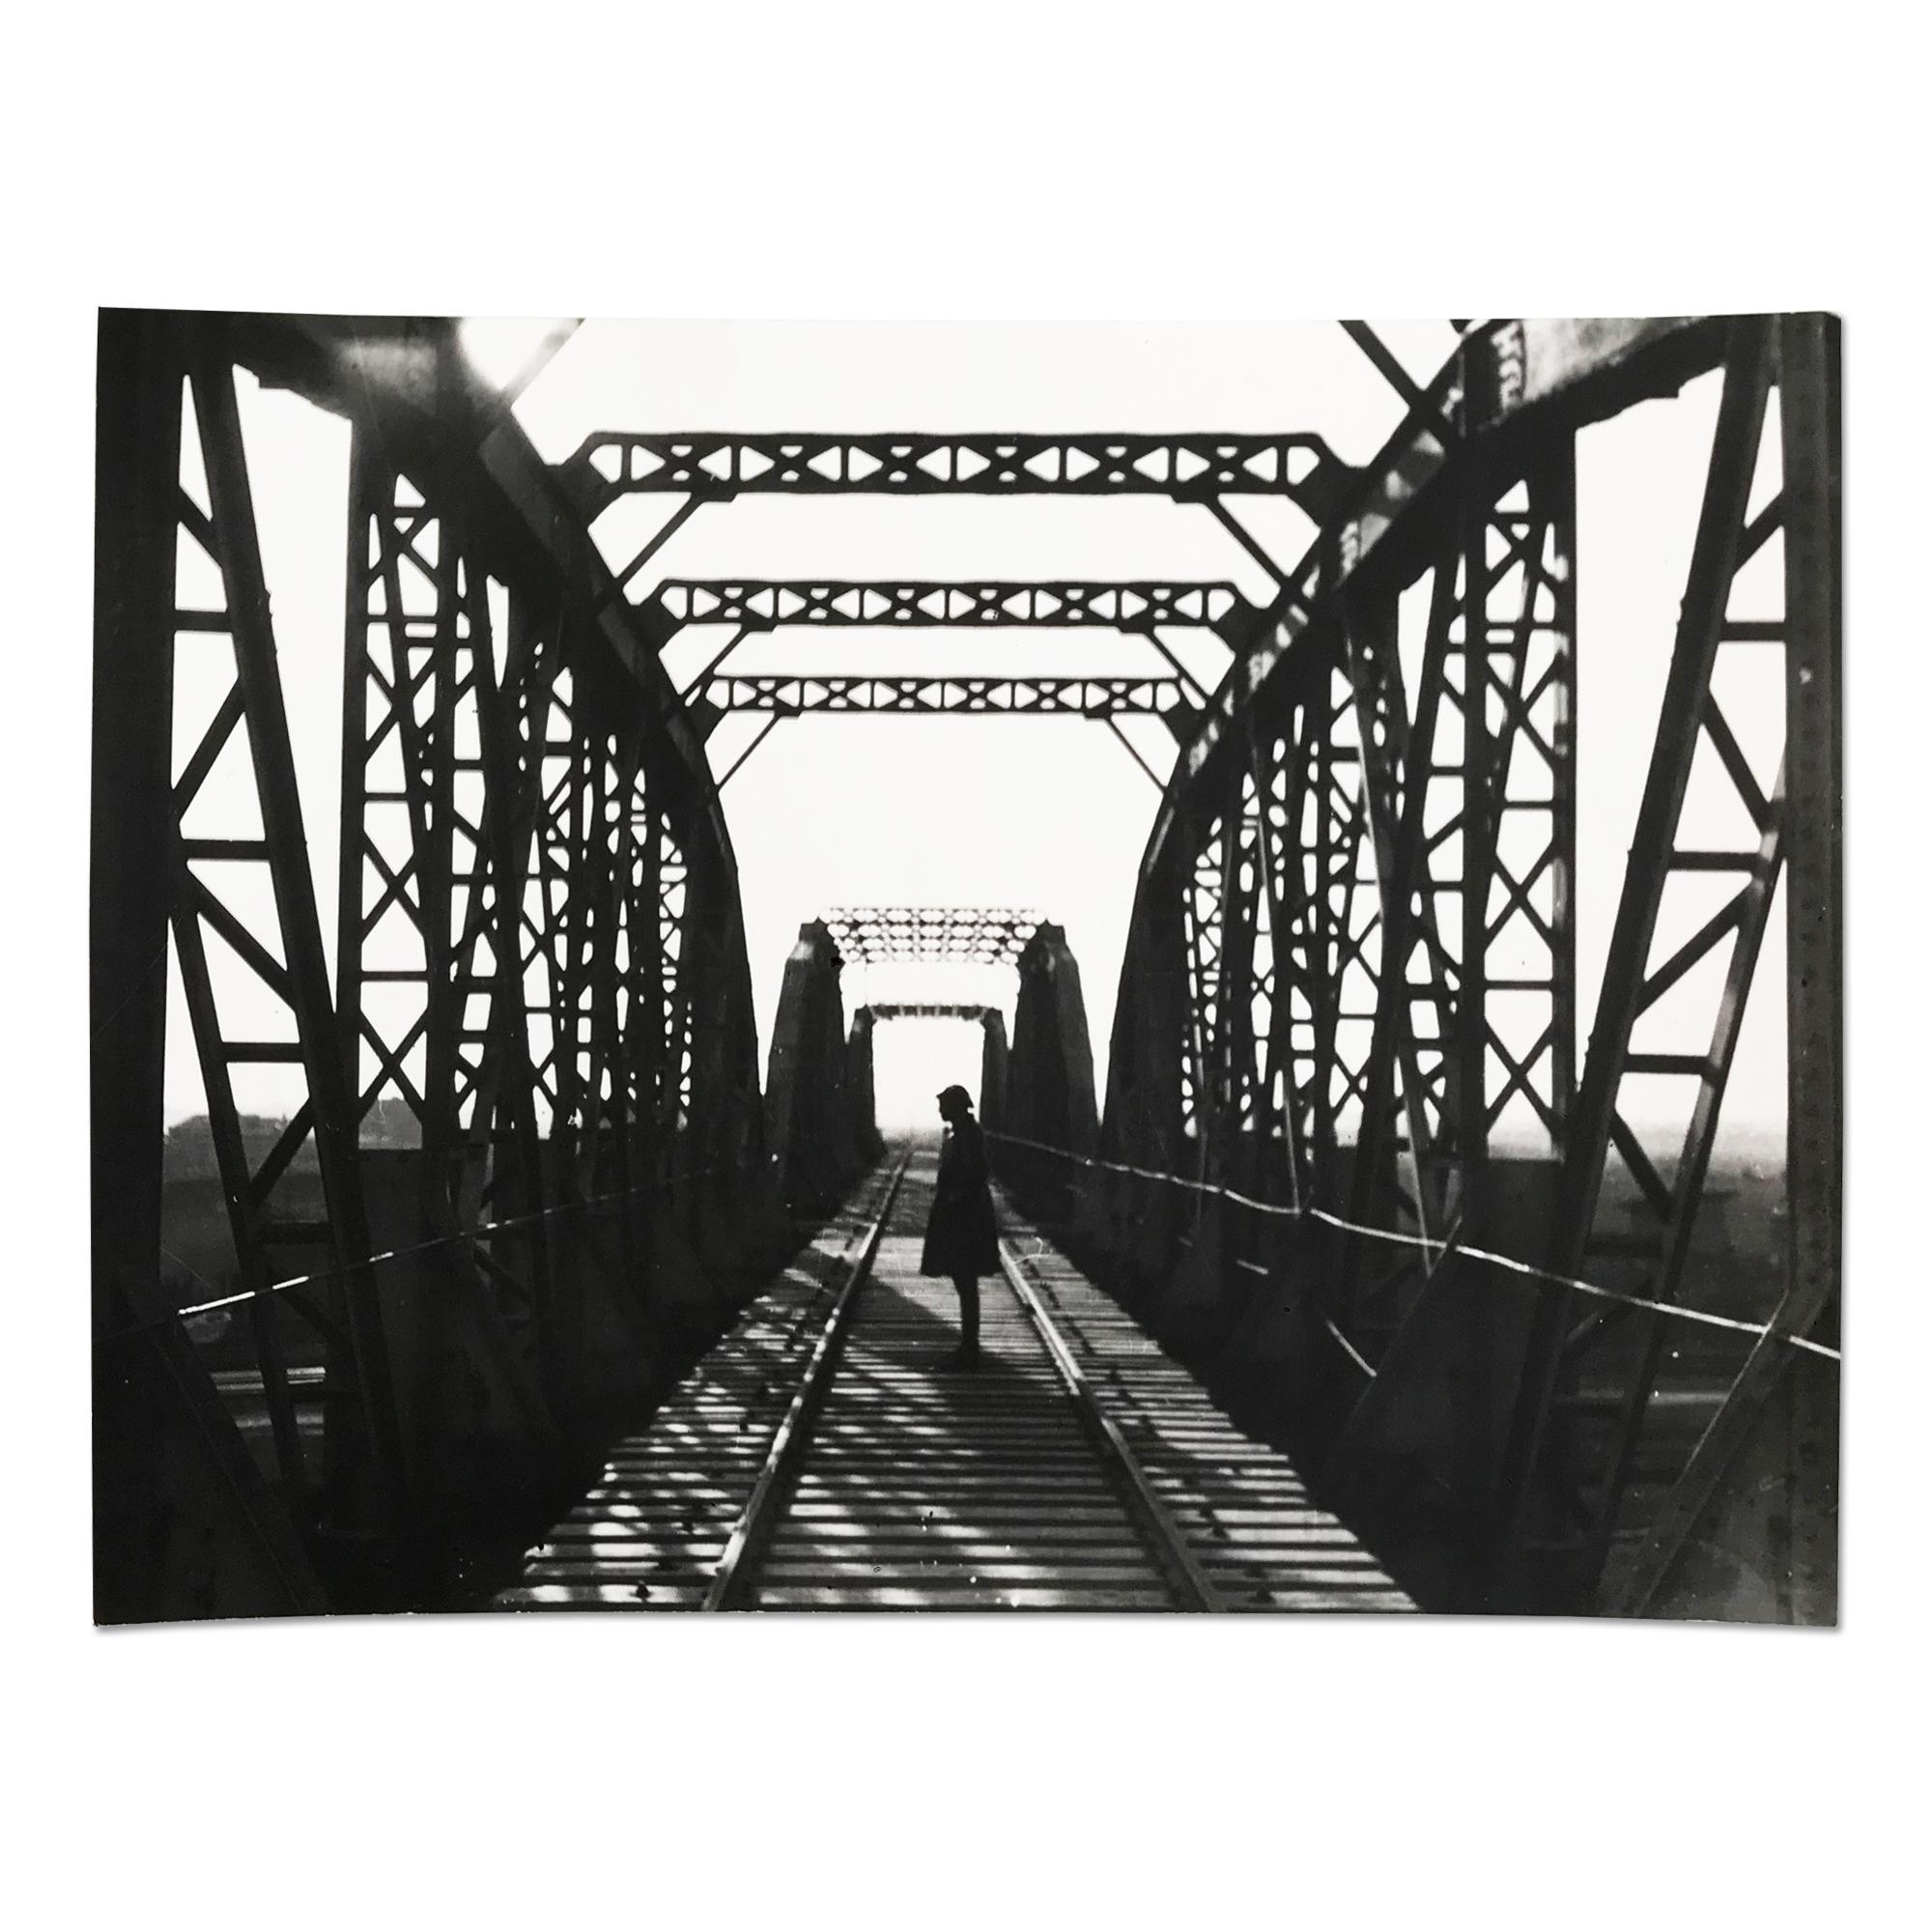 Alexander Rodchenko Landscape Photograph - Railway Bridge, Silver Gelatin Print, Constructivism, Modern Art, 20th Century